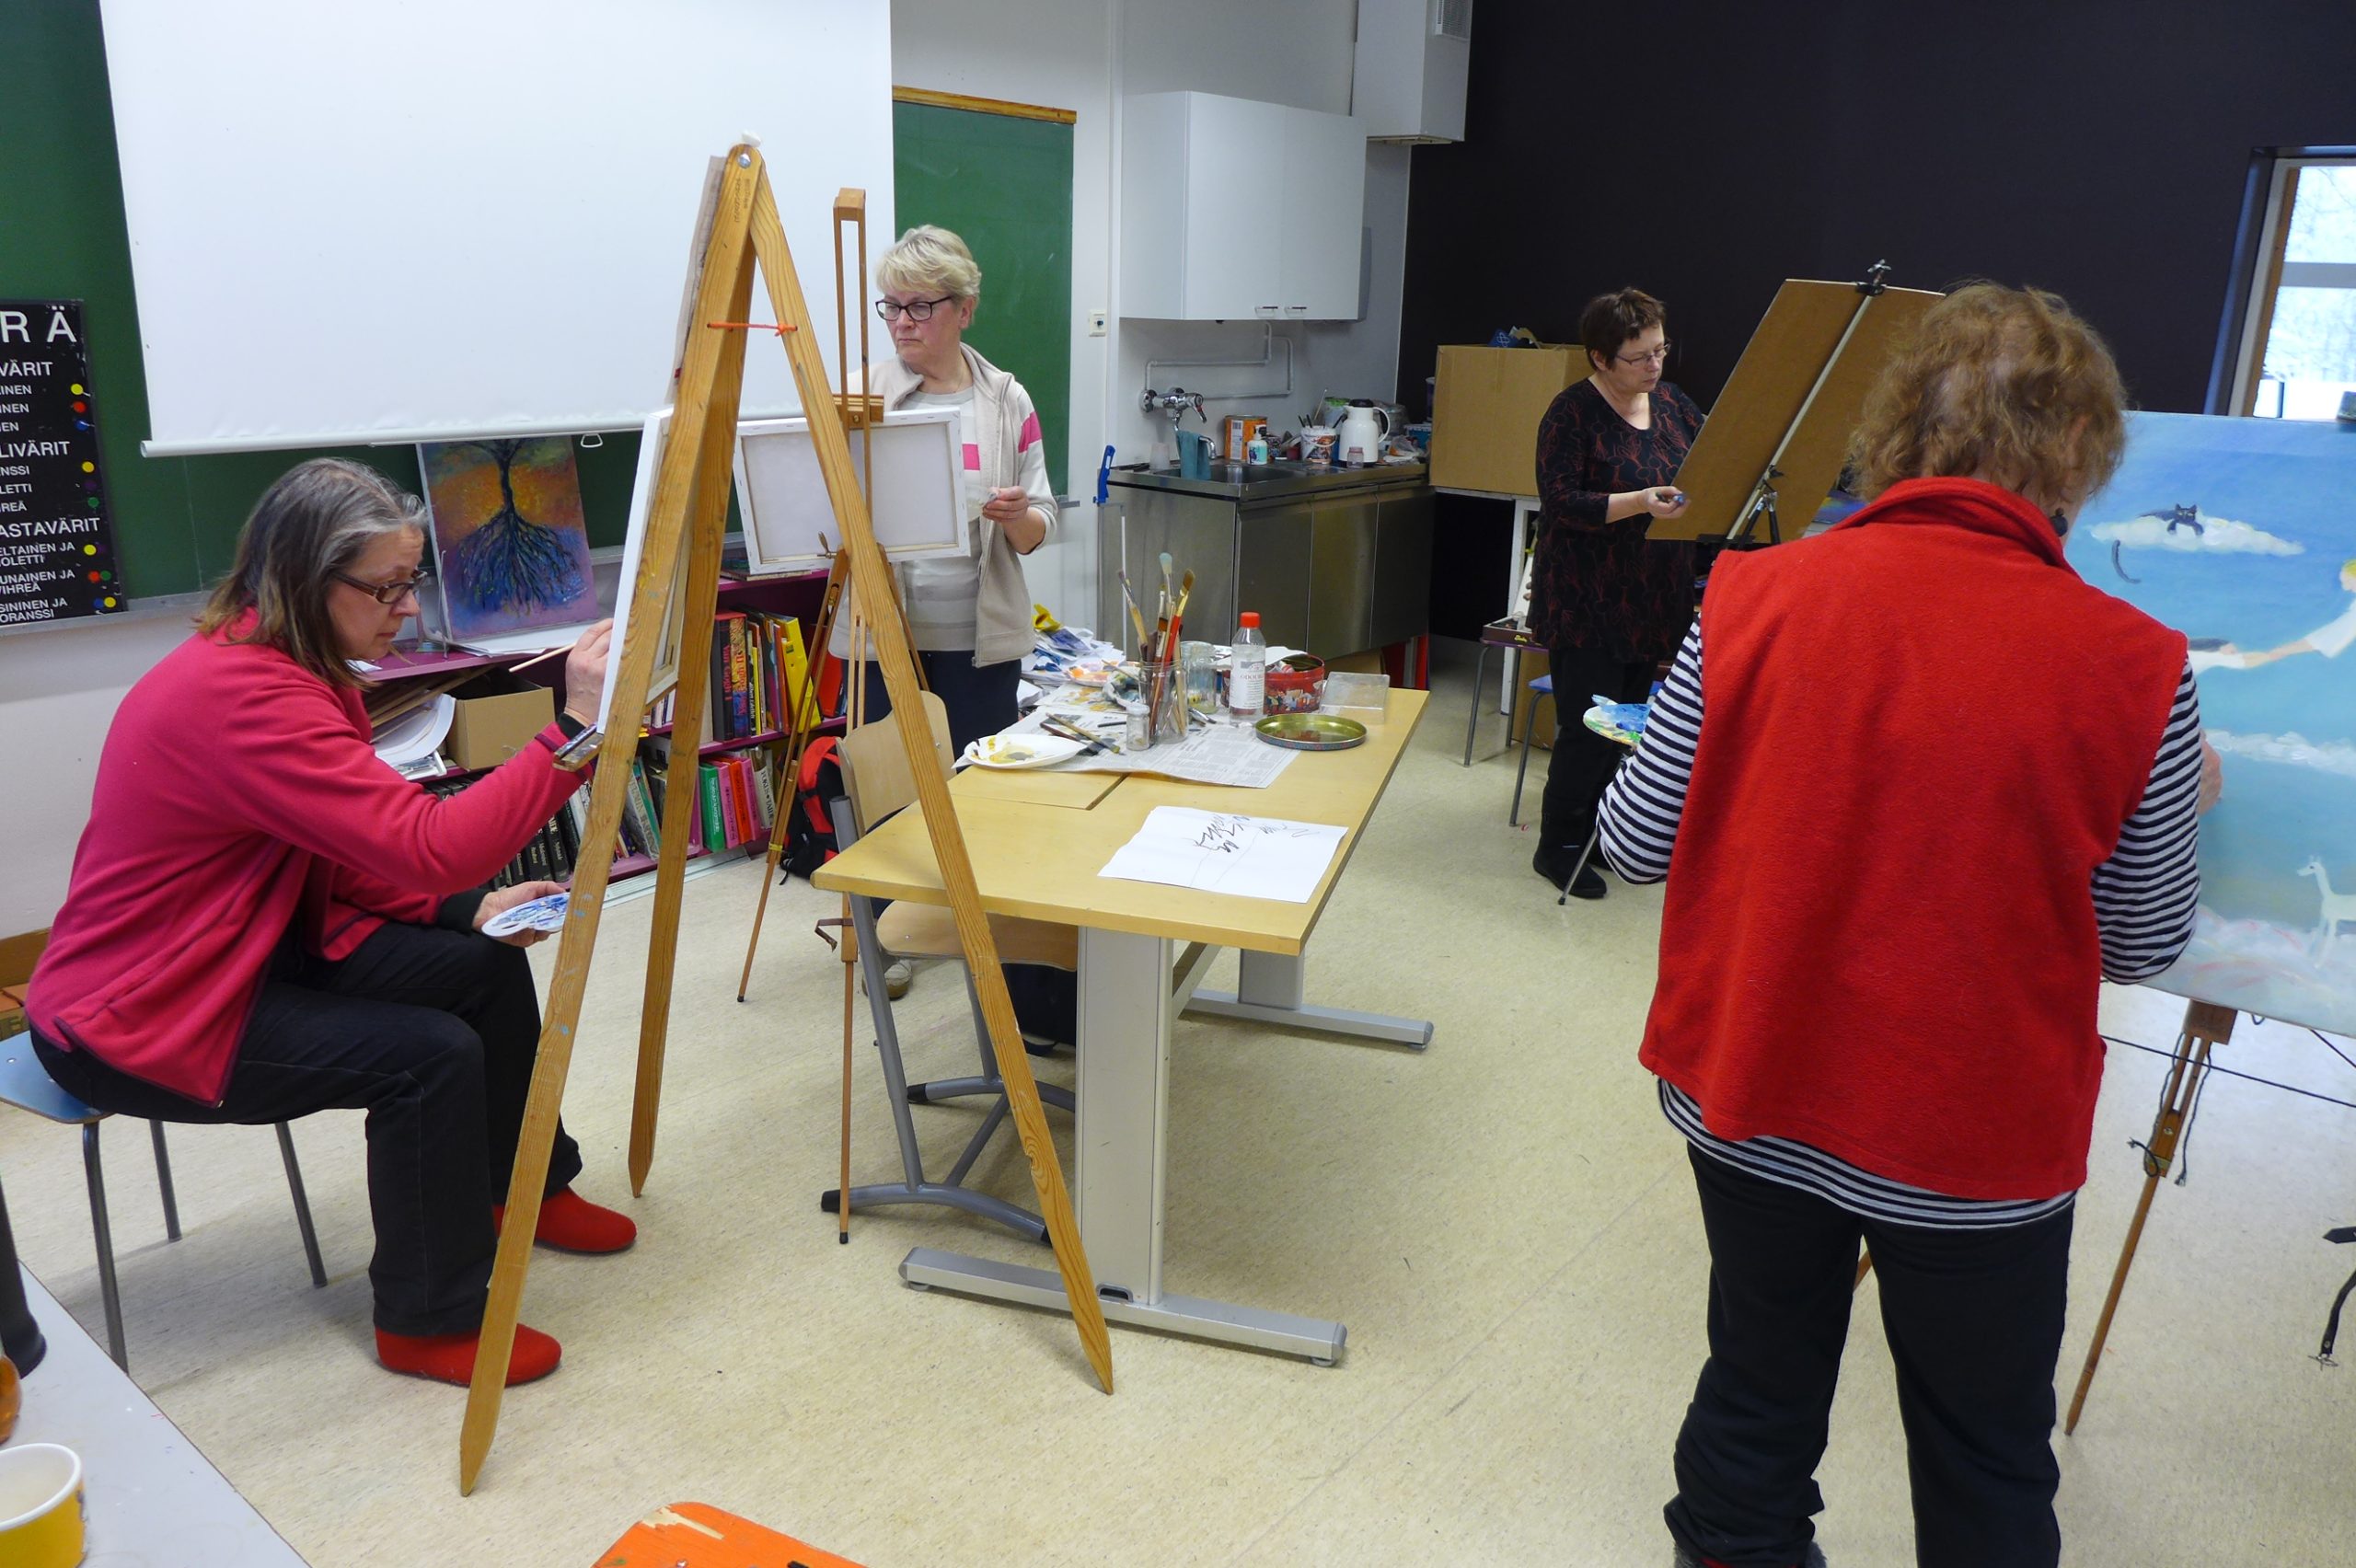 Luokkahuoneessa kolme naista seisoo ja yksi istuu telineidensä ääressä maalaamassa taulua.